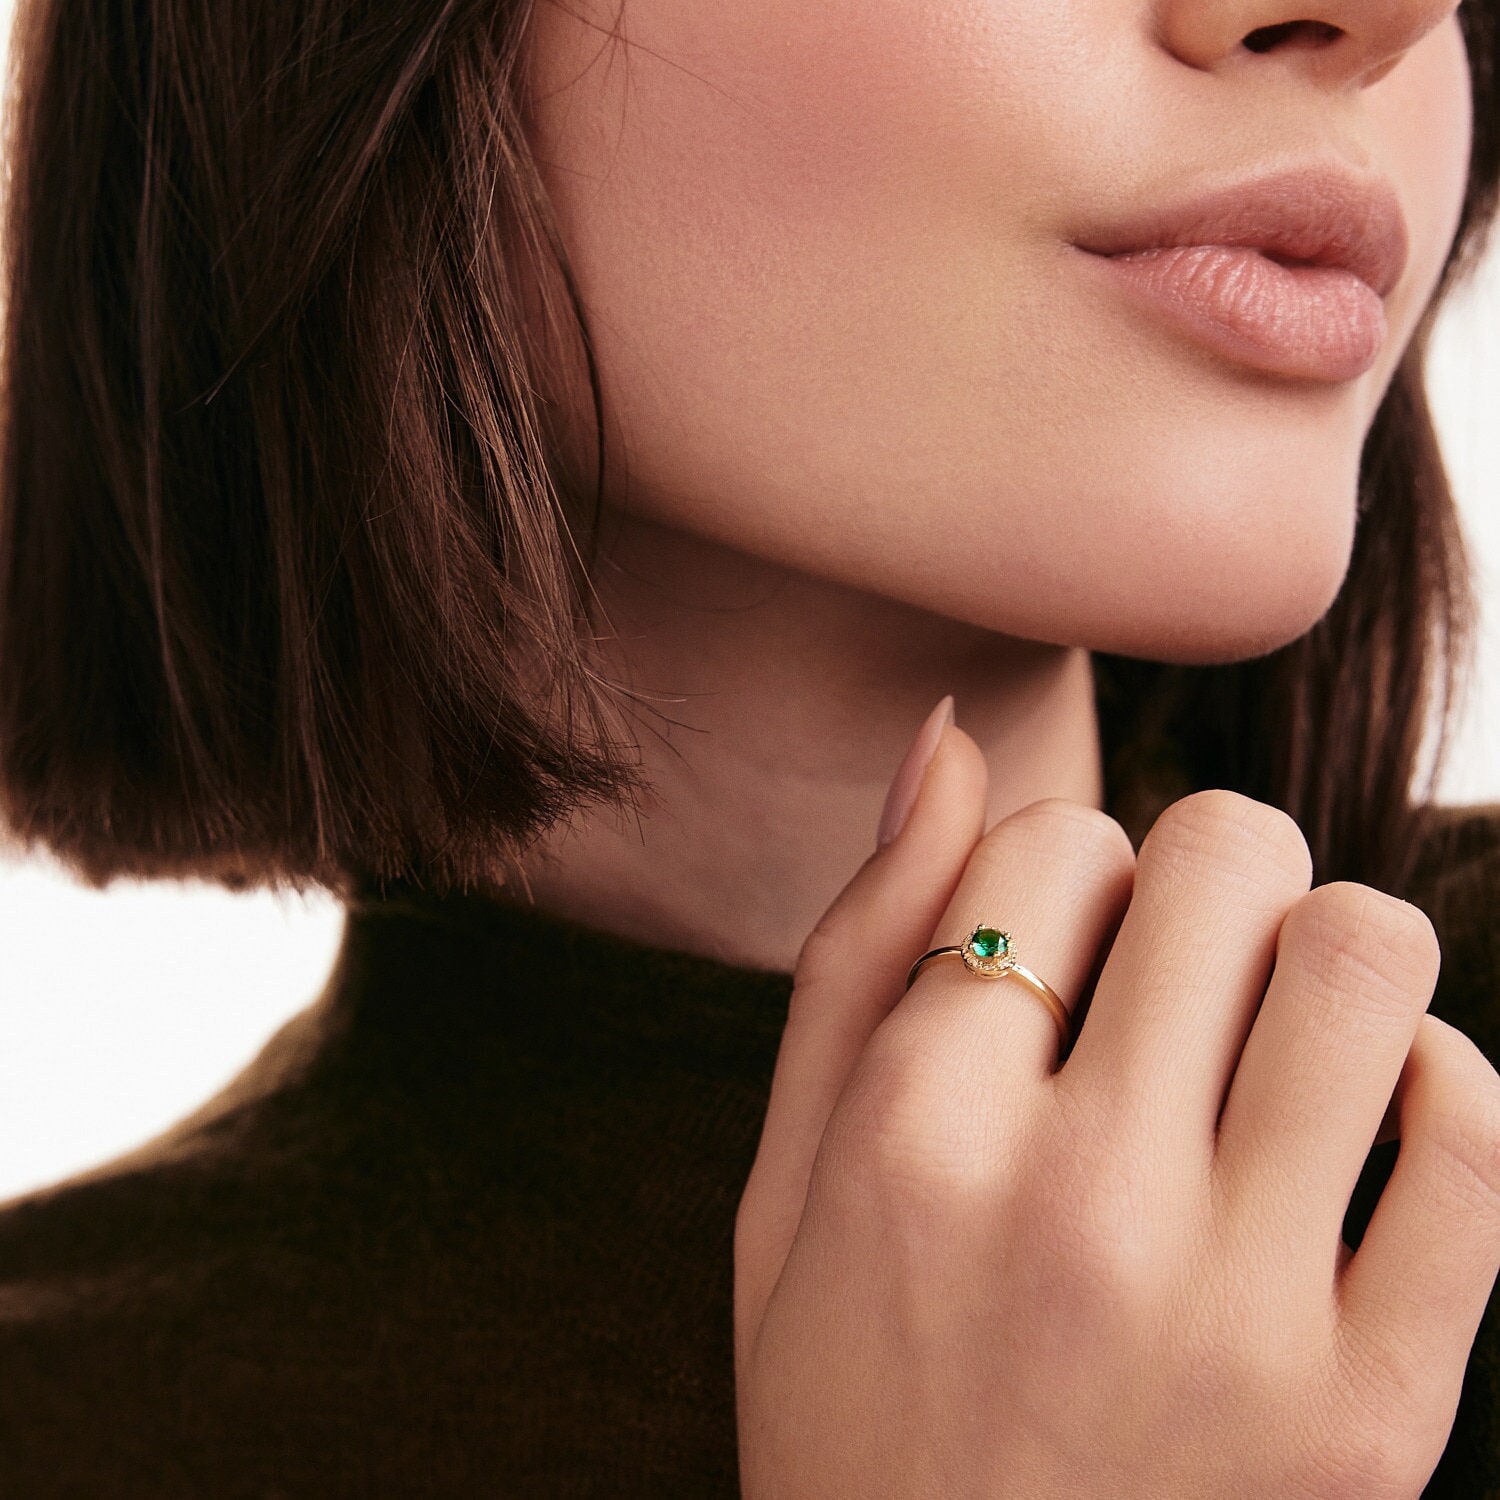 Diamant Halo Ring Mit Smaragd in 585 Gold | Zierlicher Stapelring Für Frauen 14K Echtgold Edelstein Schmuck Geschenk Sie von MayaAndMia